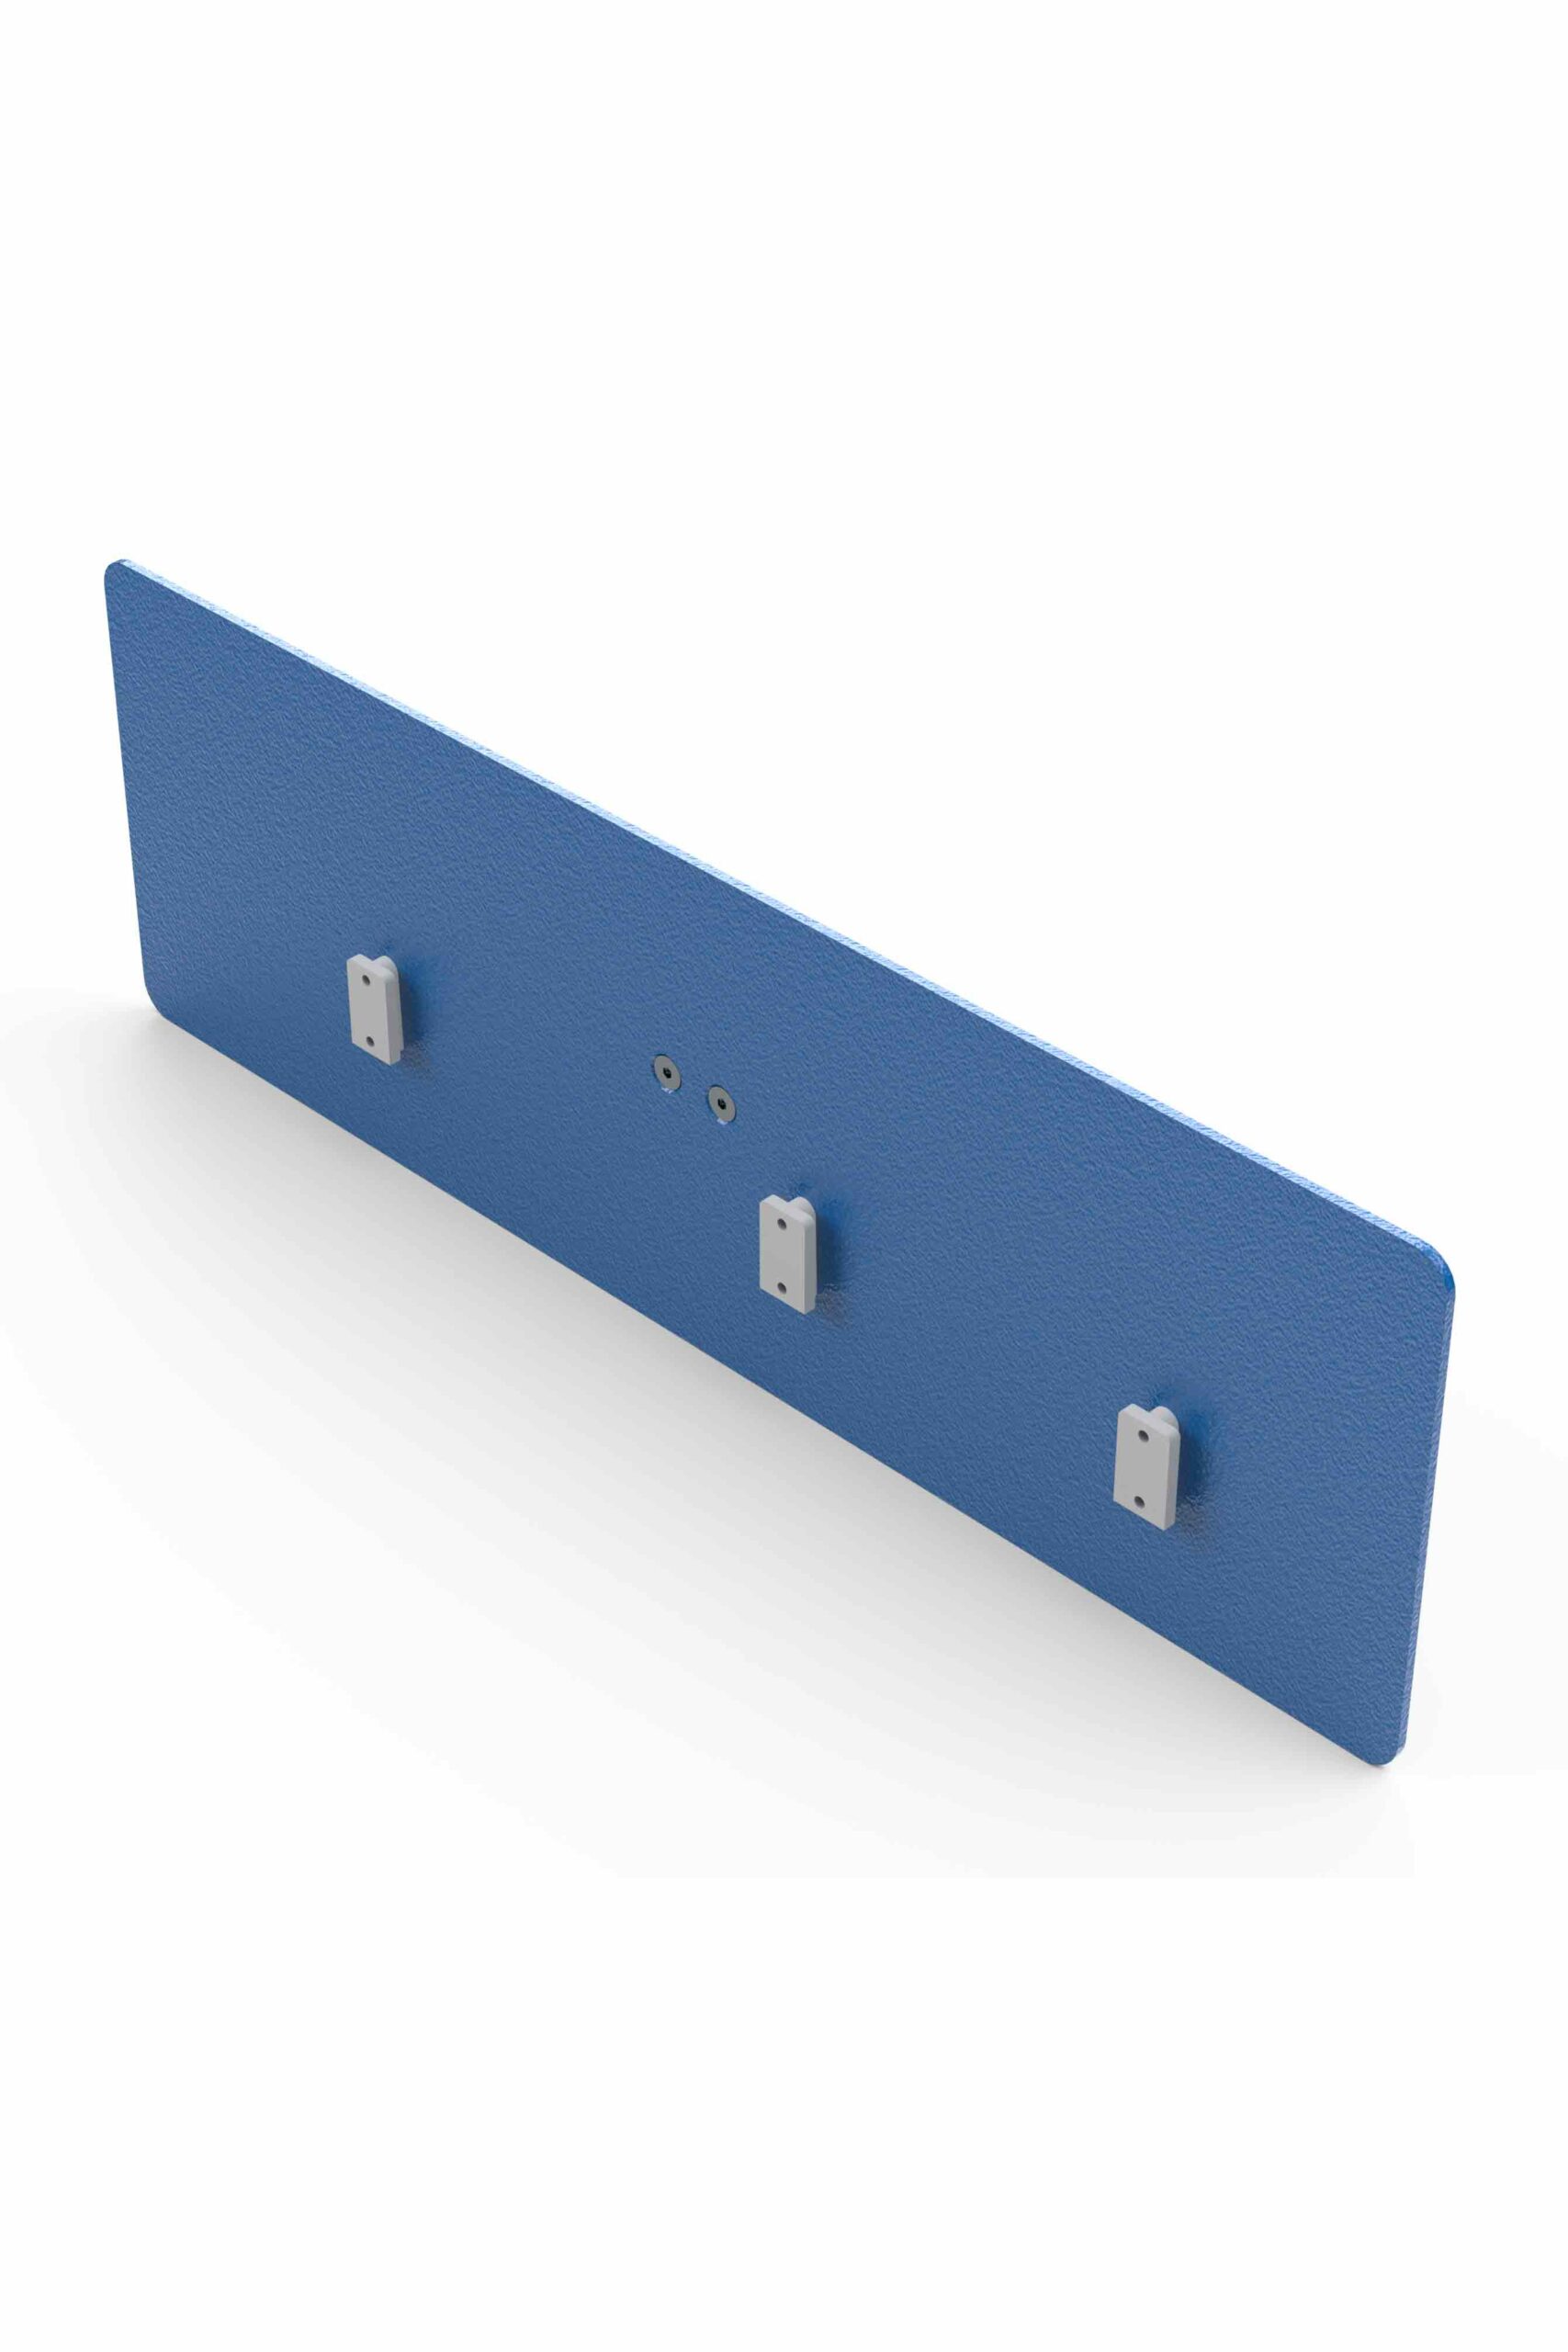 ulf-mks-easyclick-premium-m3-normschiene-platte-aluminium-blau